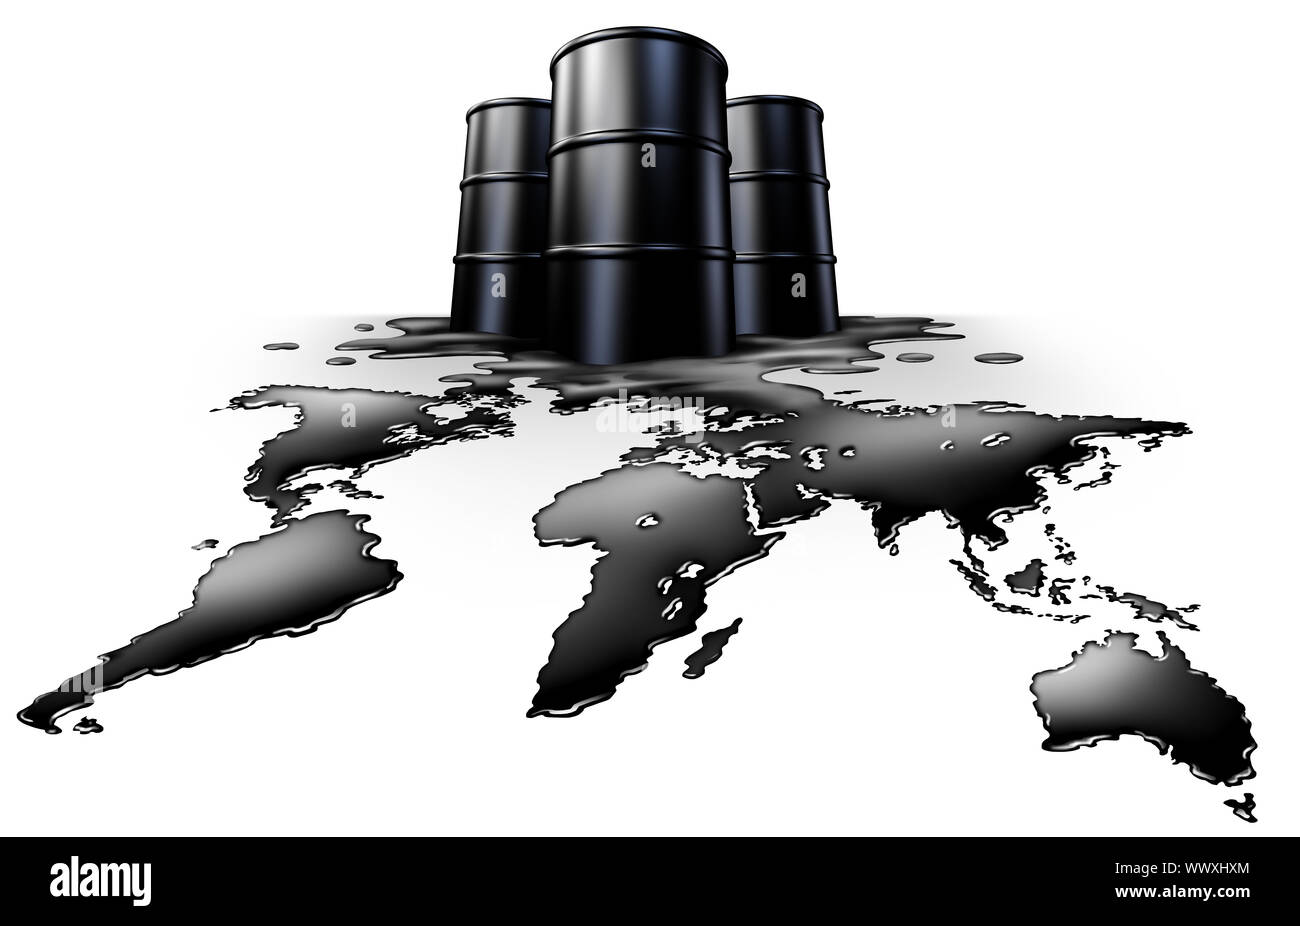 Crisis petrolera mundial concepto energético y las exportaciones de petróleo como un símbolo global de suministro de combustible fósil como un icono con forma de derrame como el planeta. Foto de stock